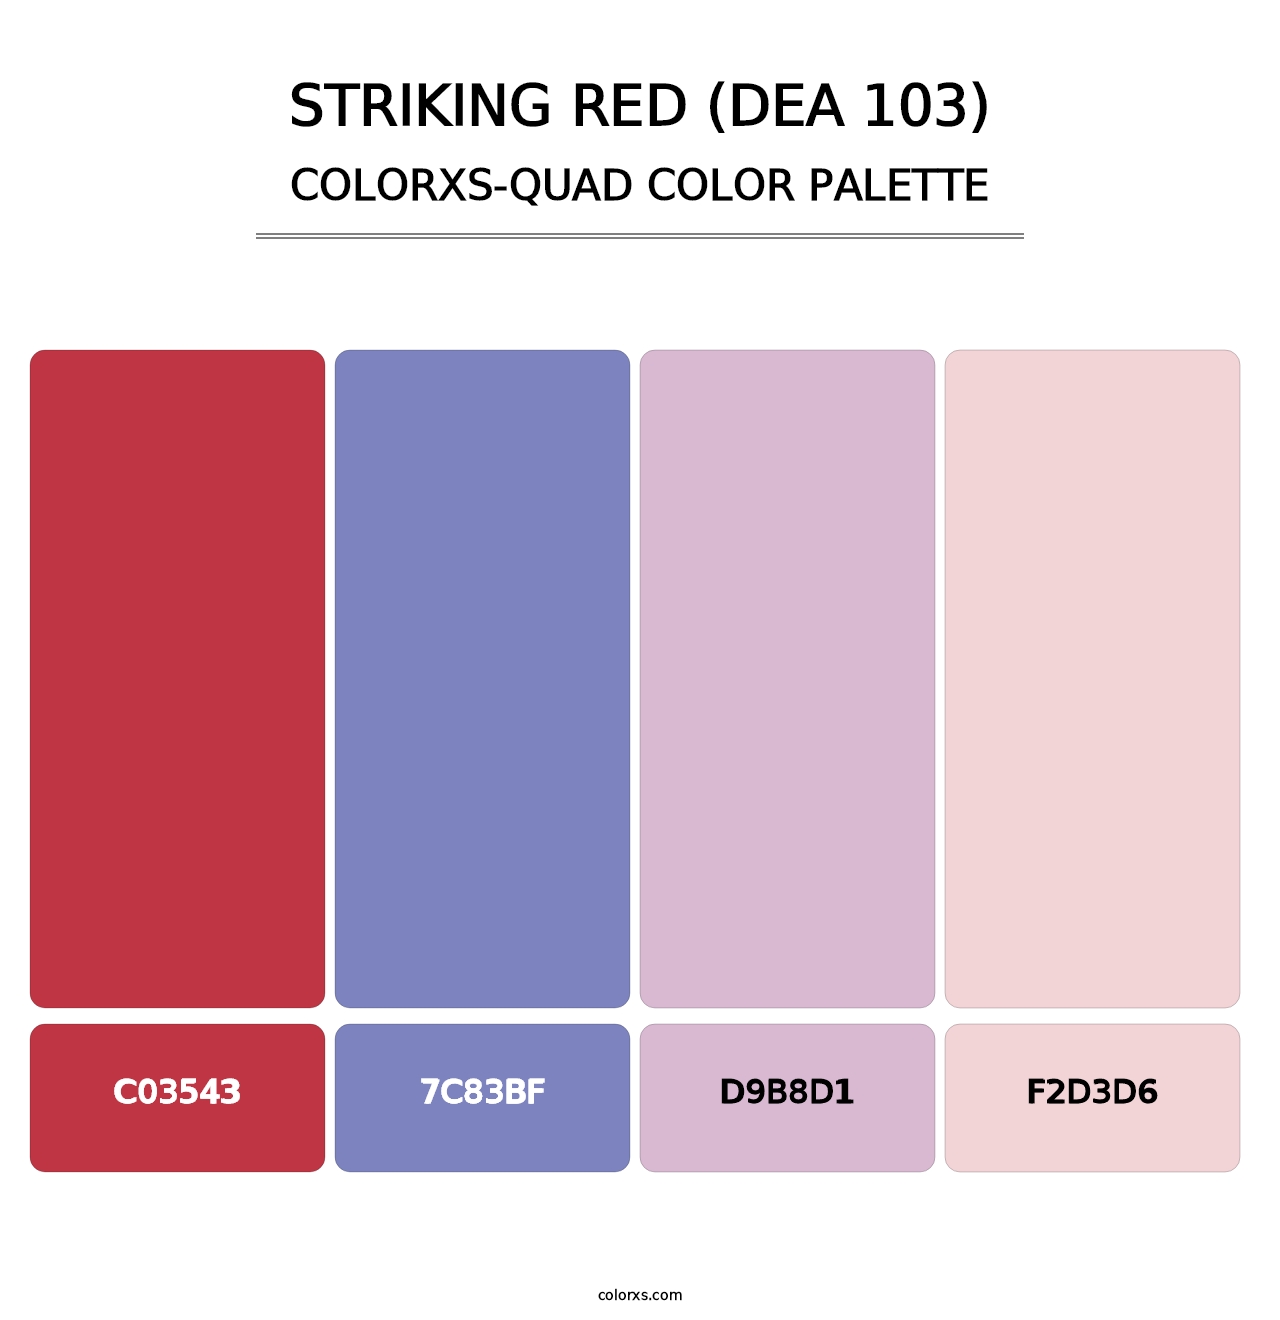 Striking Red (DEA 103) - Colorxs Quad Palette